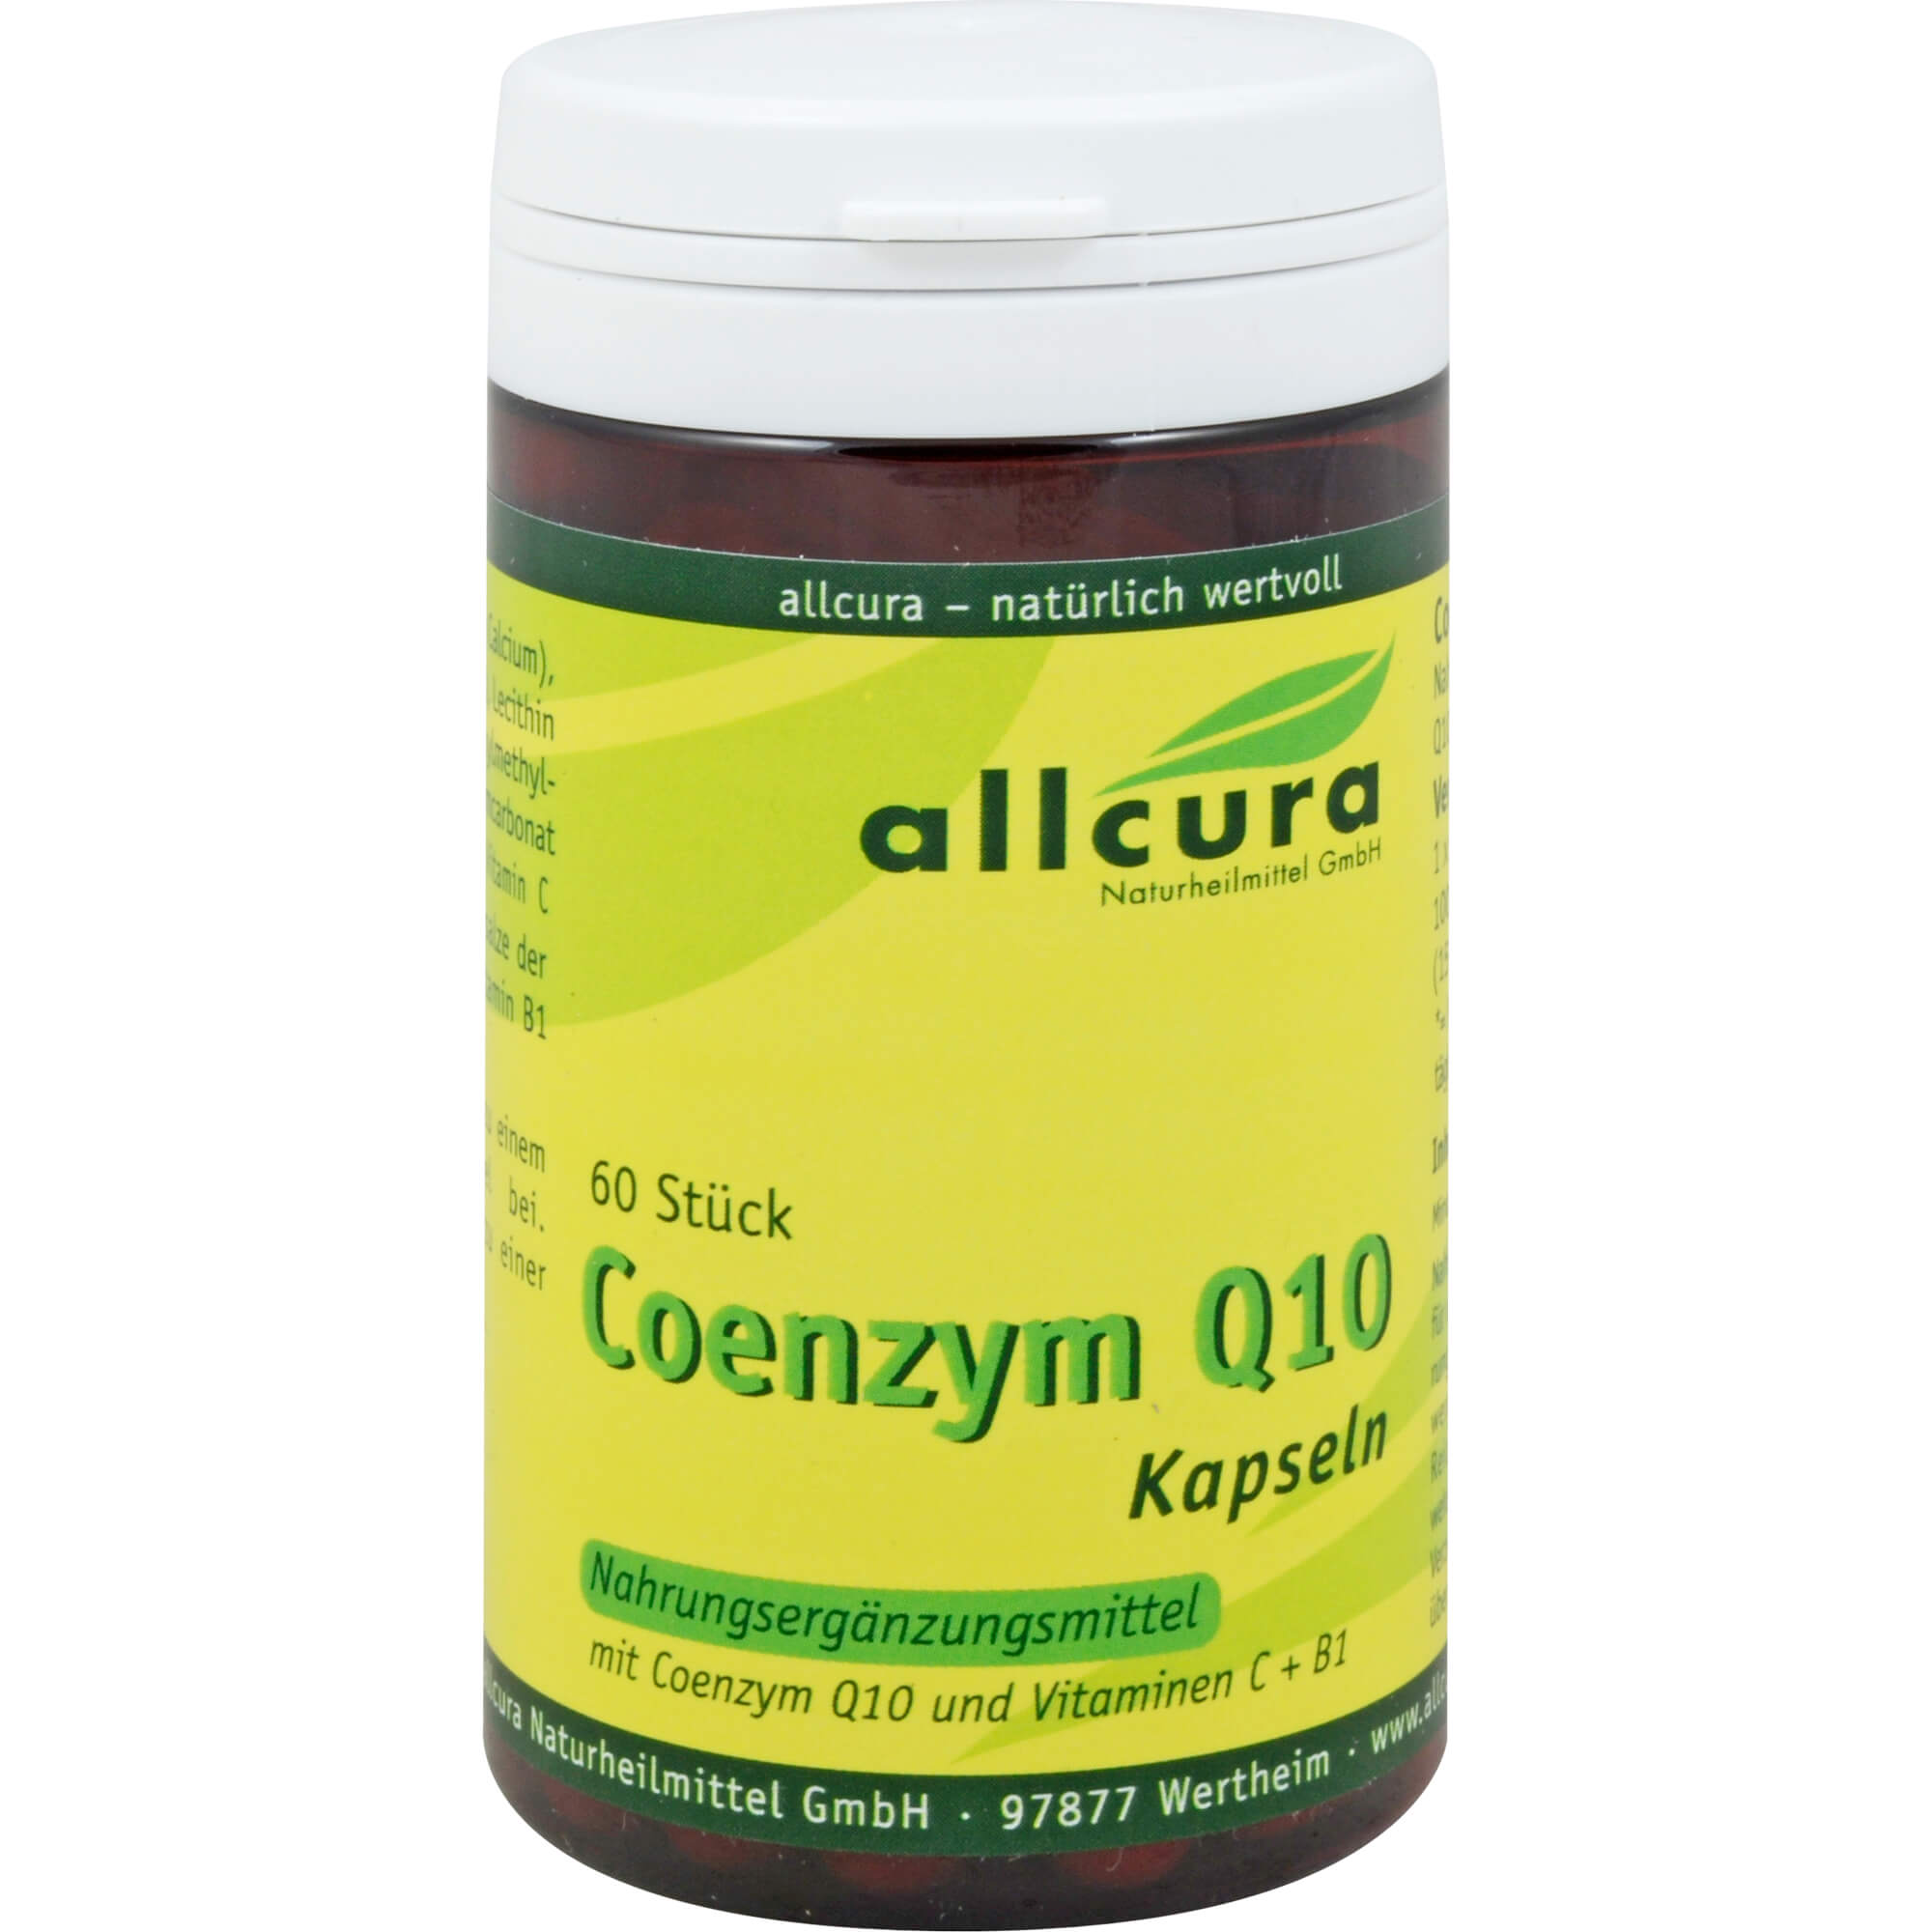 Nahrungsergänzungsmittel mit Coenzym Q10.